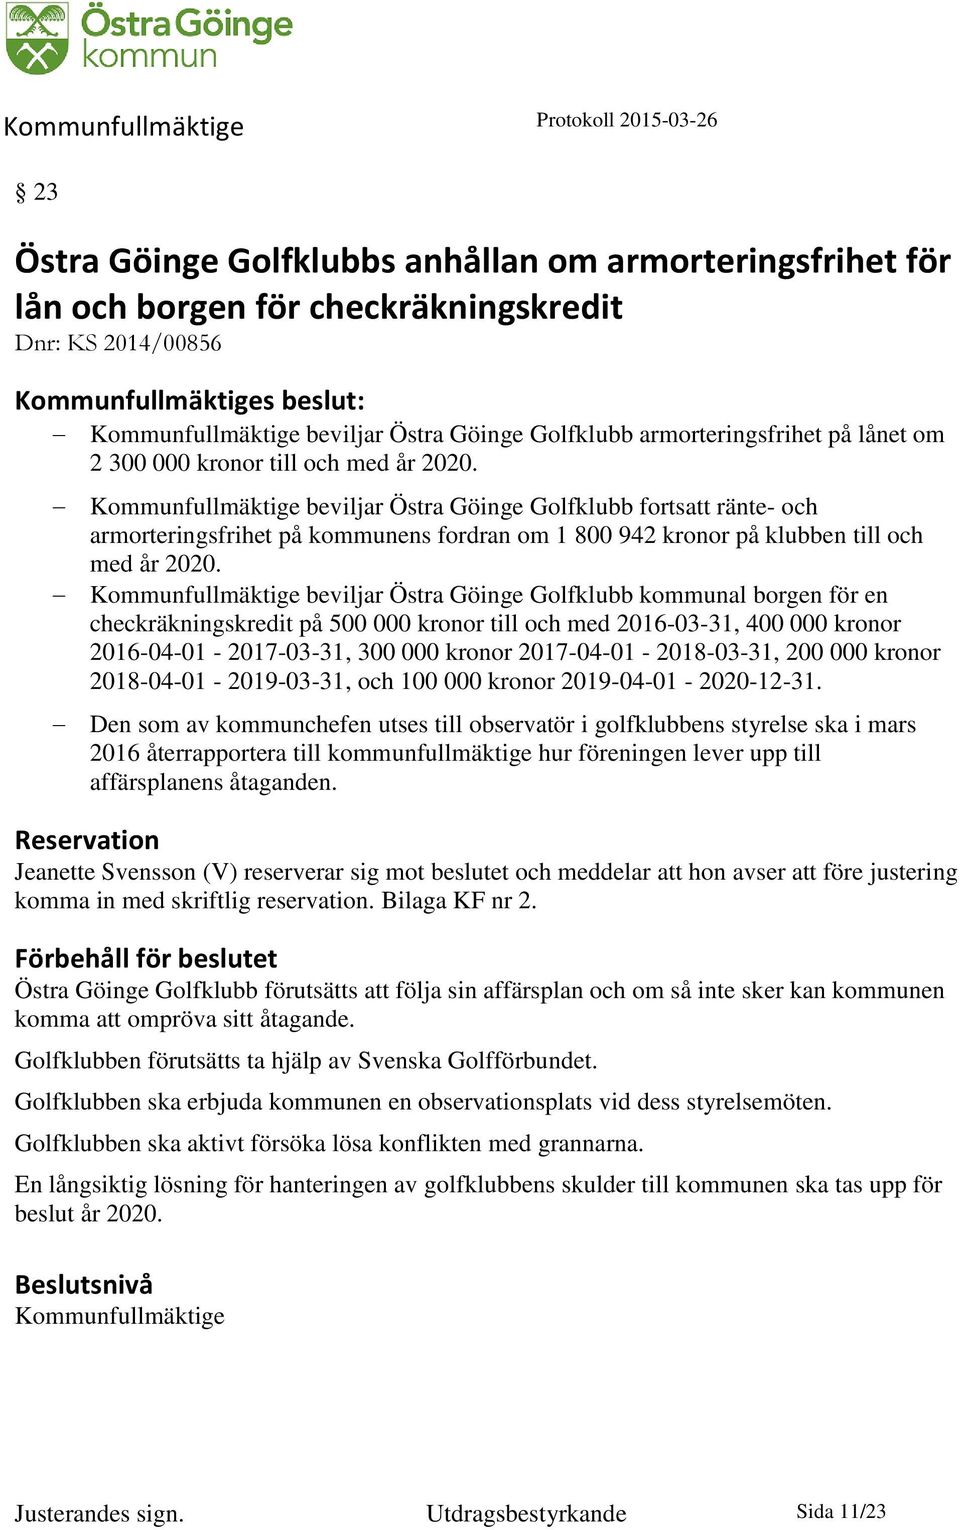 Kommunfullmäktige beviljar Östra Göinge Golfklubb fortsatt ränte- och armorteringsfrihet på kommunens fordran om 1 800 942 kronor på klubben till och med år 2020.